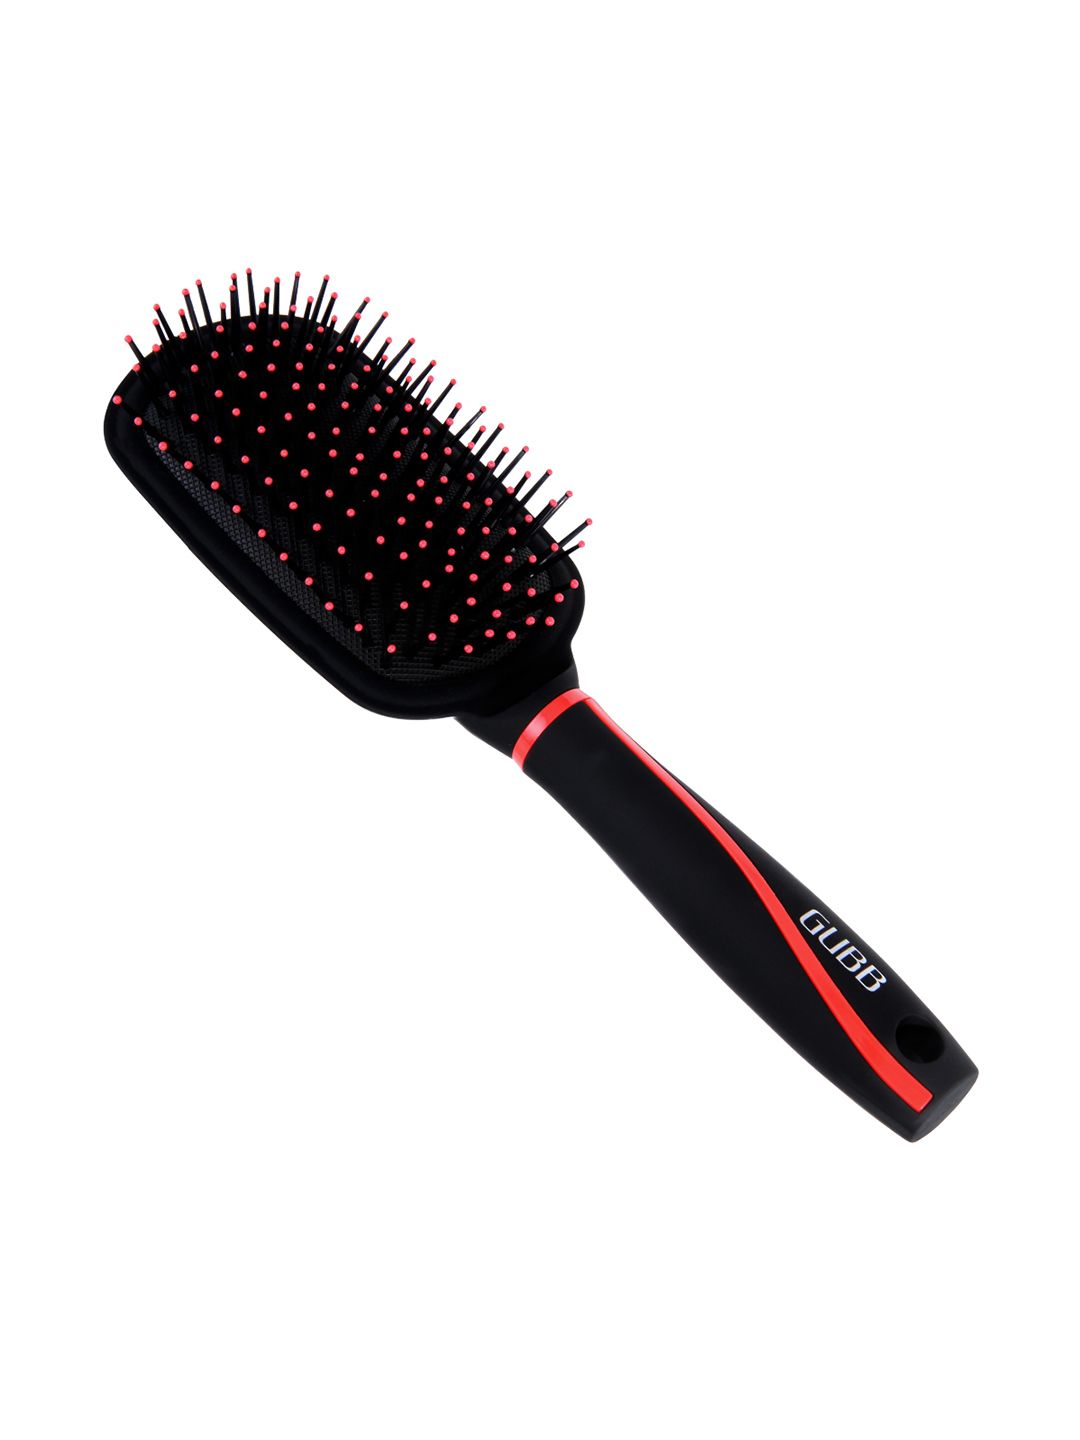 GUBB Medium Vouge Range Paddle Hair Brush Comb Price in India